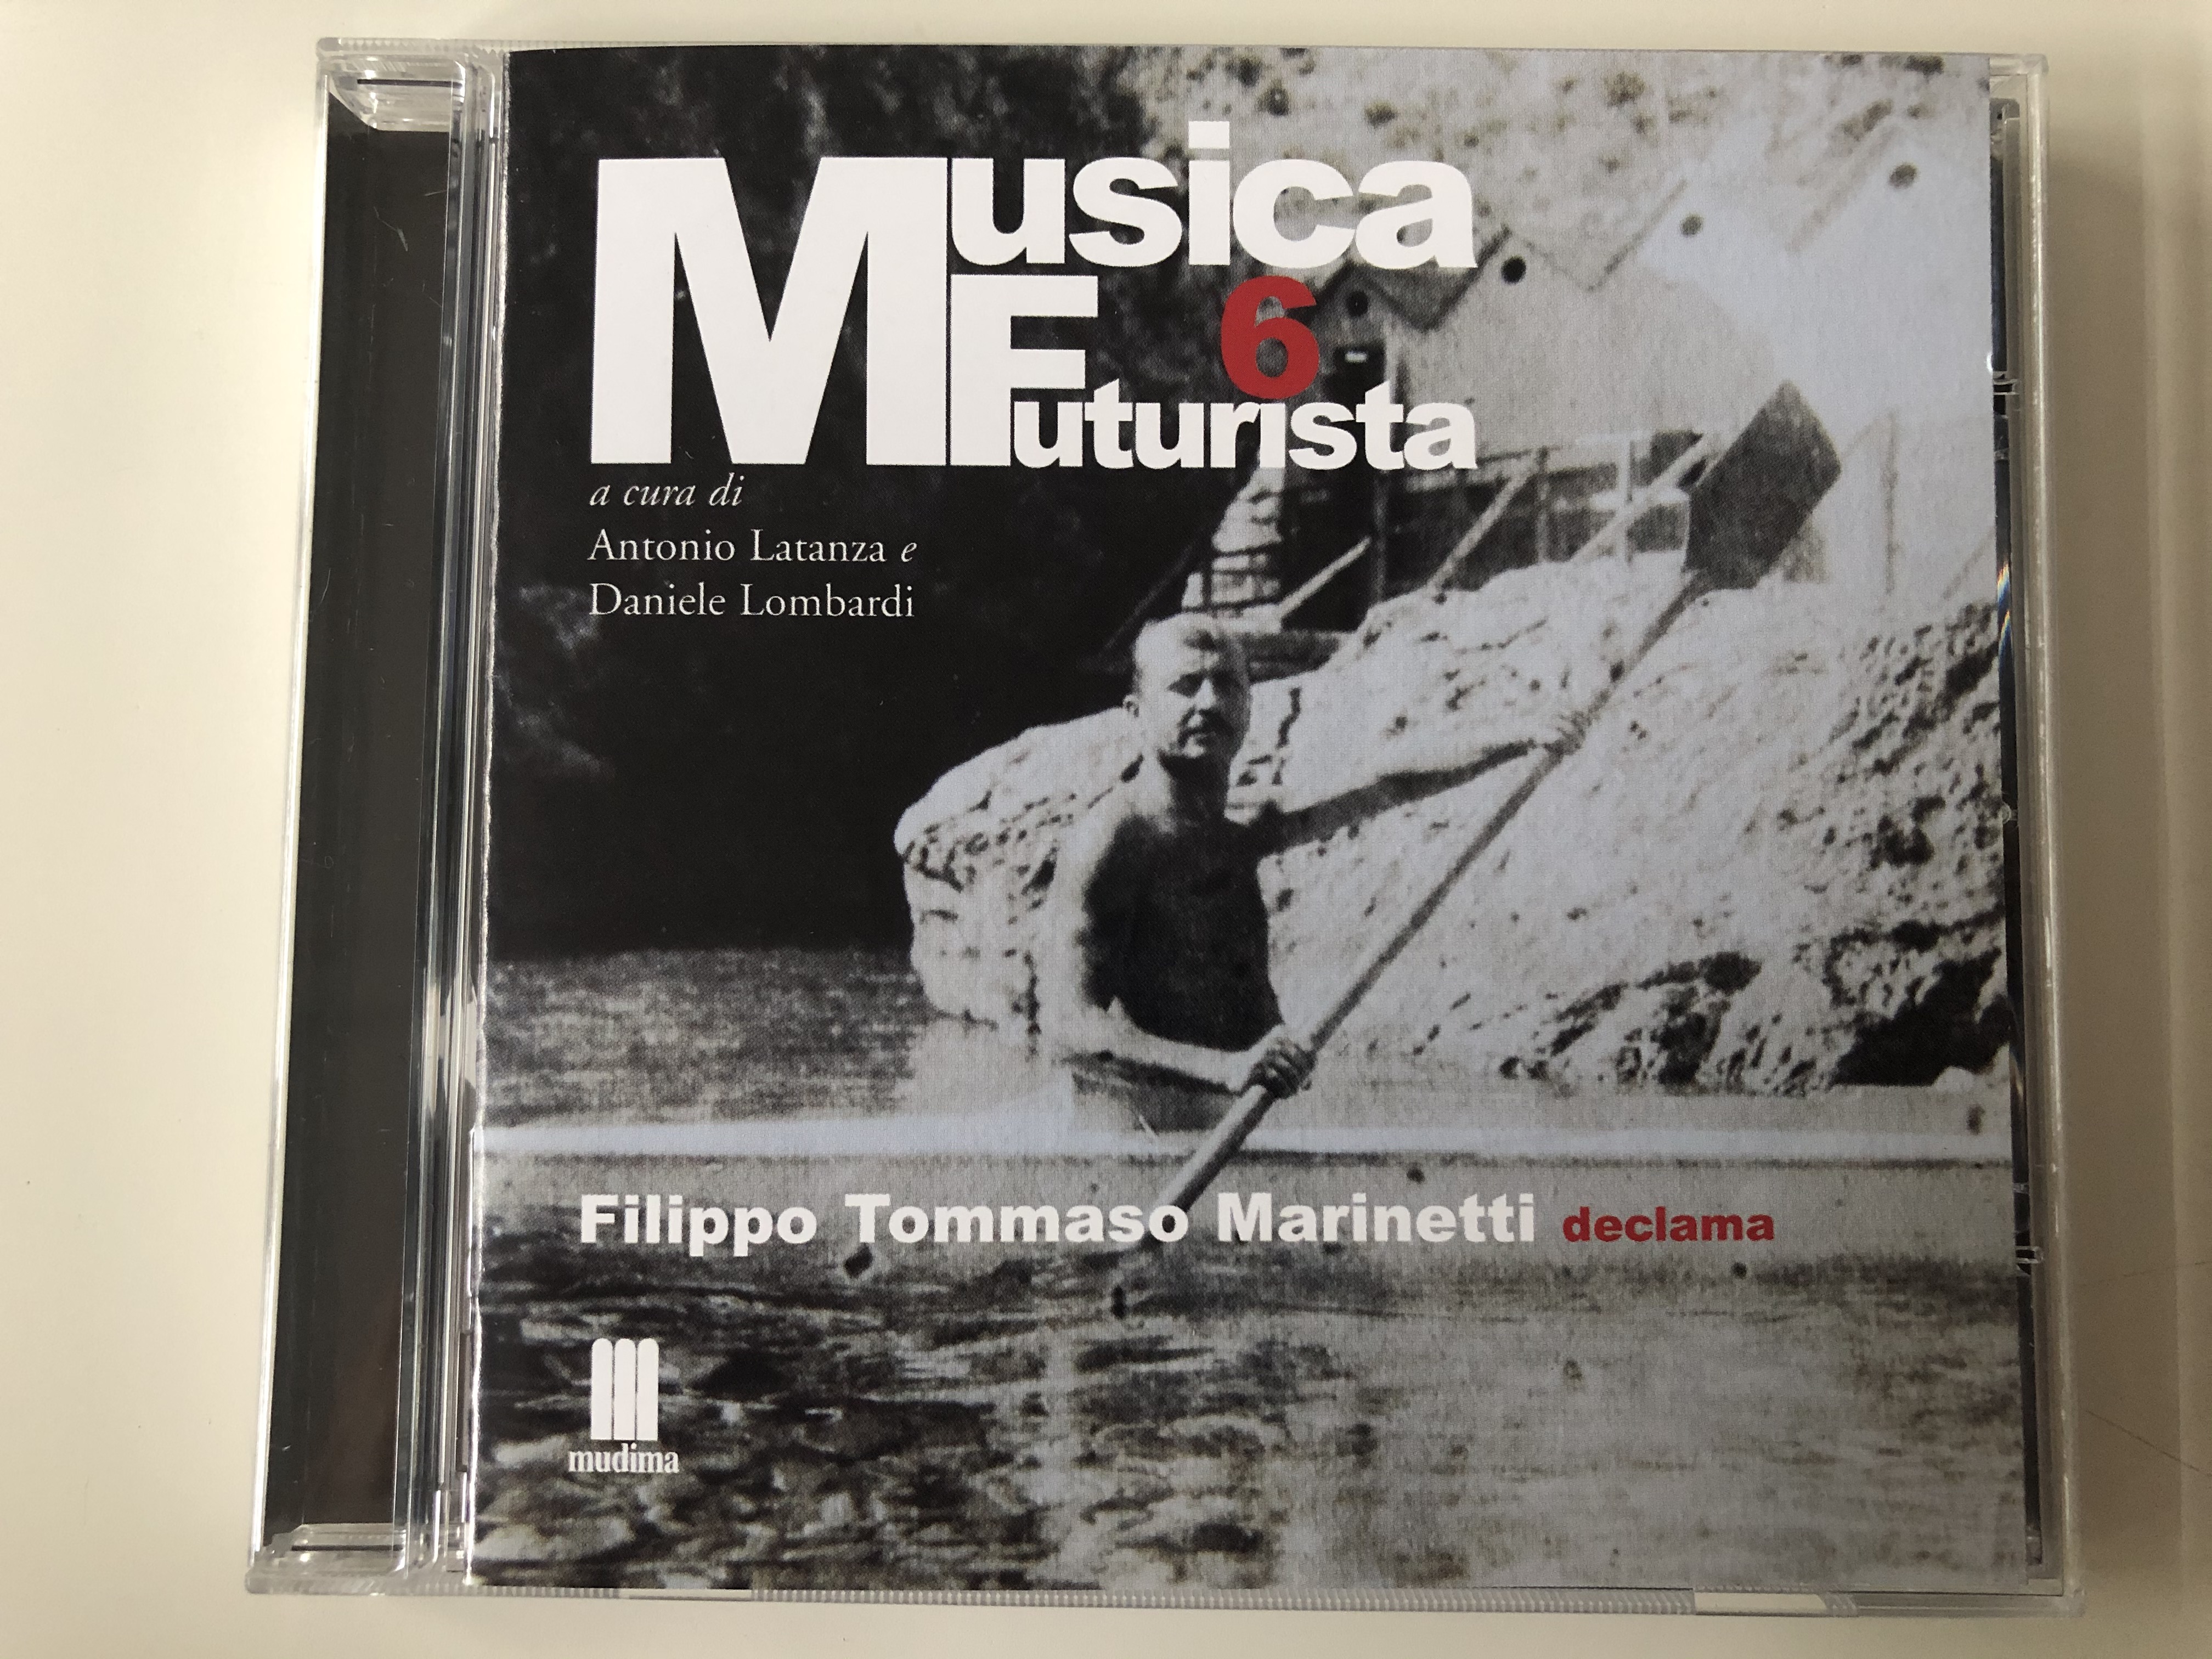 musica-futurista-6-a-curi-di-antonio-latanza-e-daniele-lombardi-filippo-tommaso-mainetti-declama-mudima-ed.-musicali-audio-cd-2010-8033224410319-1-.jpg